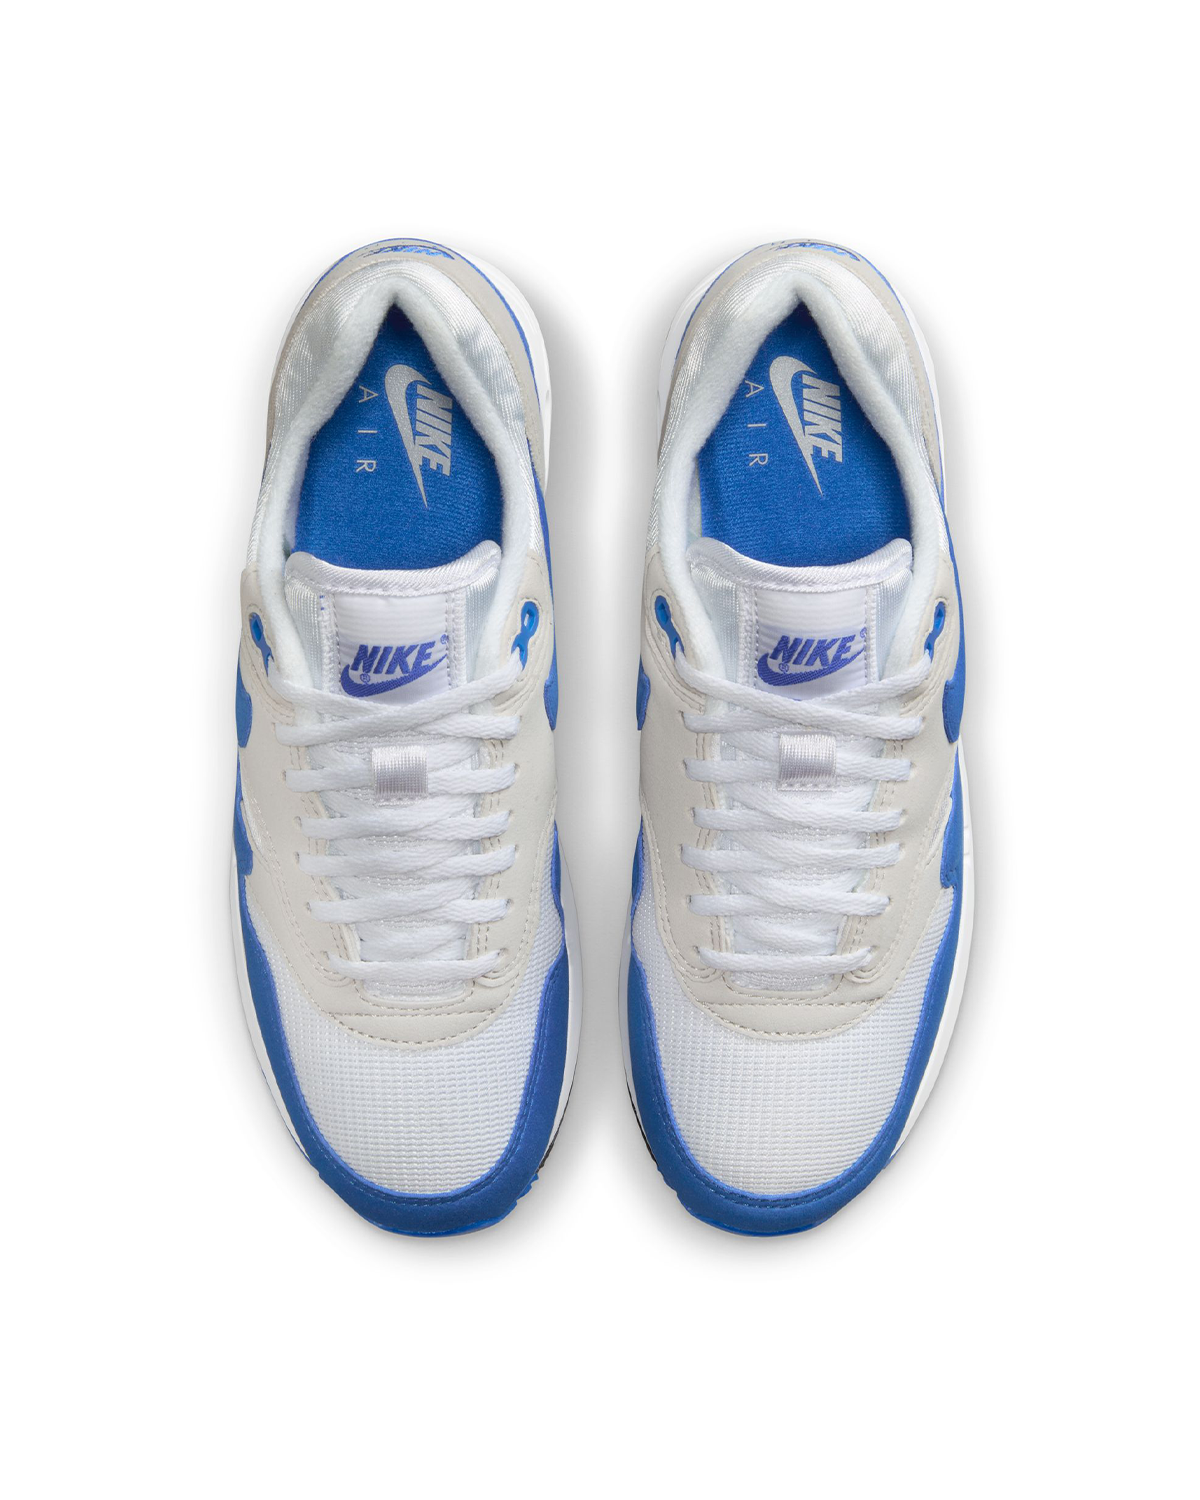 Nike Air Max OG 1 '86 OG Royal Blue